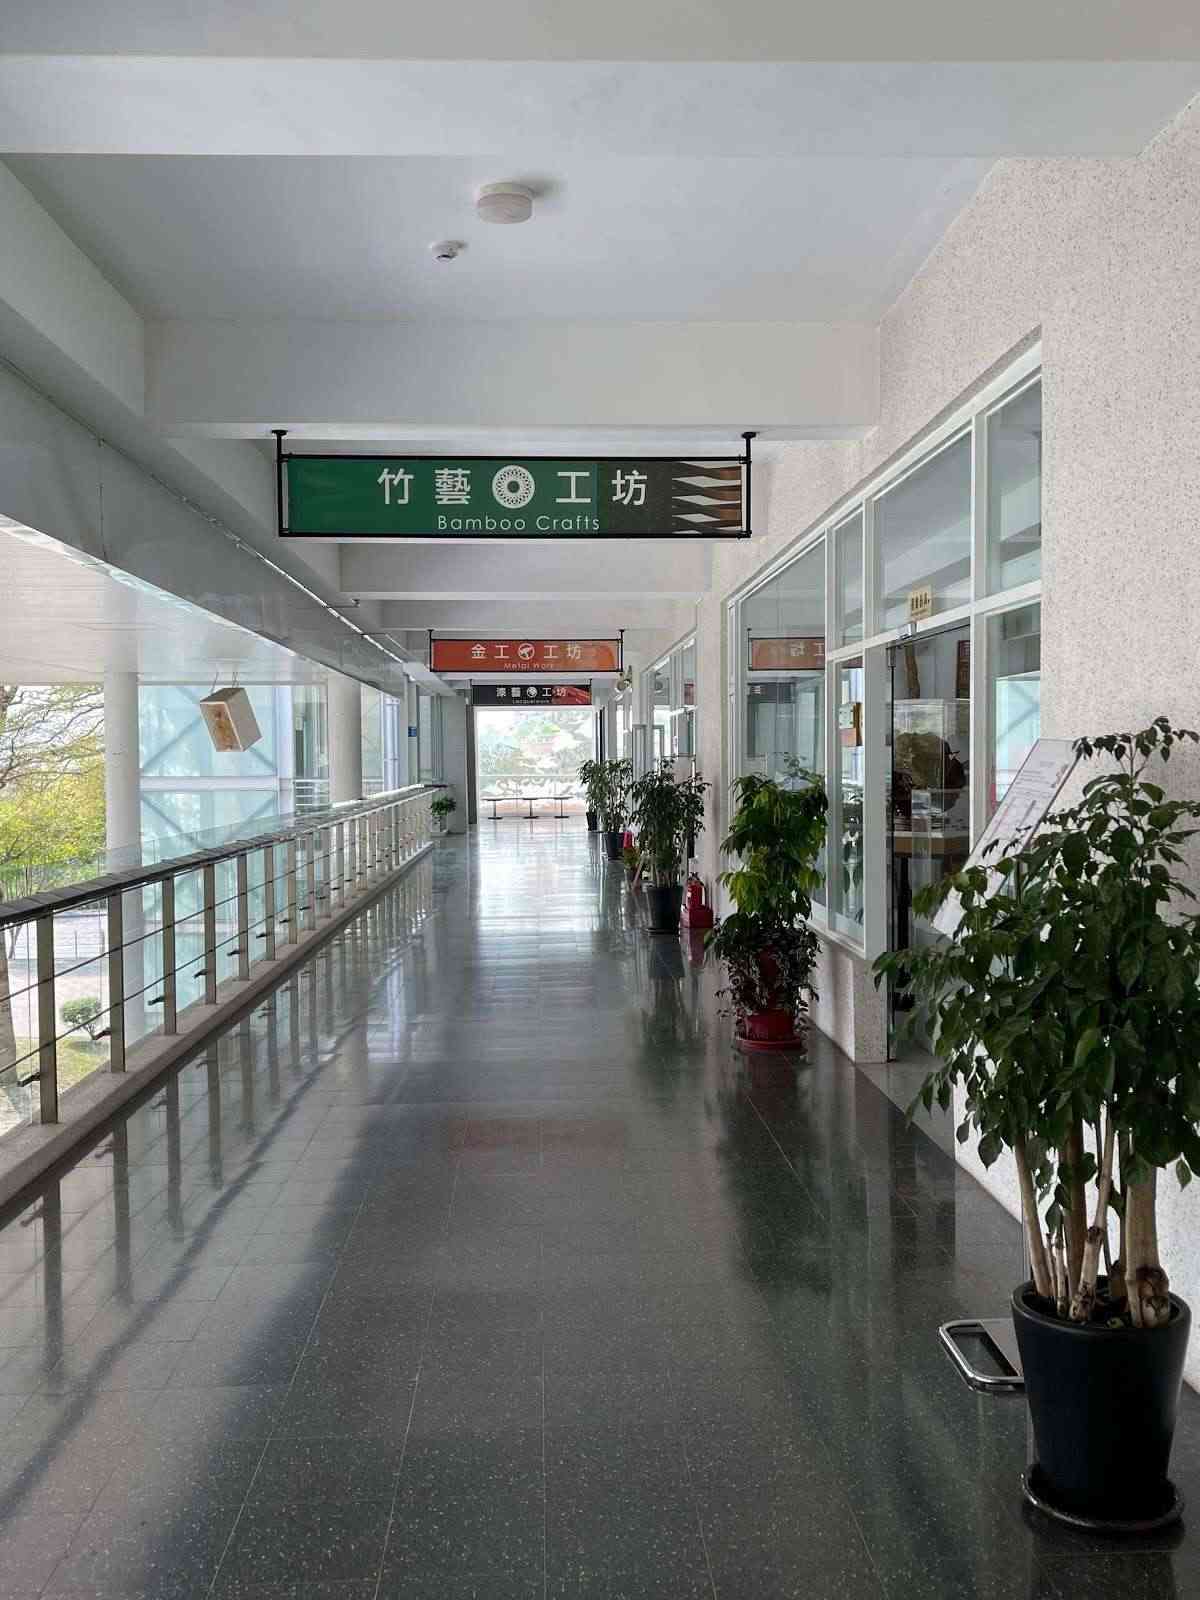 臺灣工藝研究發展中心/ 攝影者: 鐘瑪莉

(由第三方資訊提供)